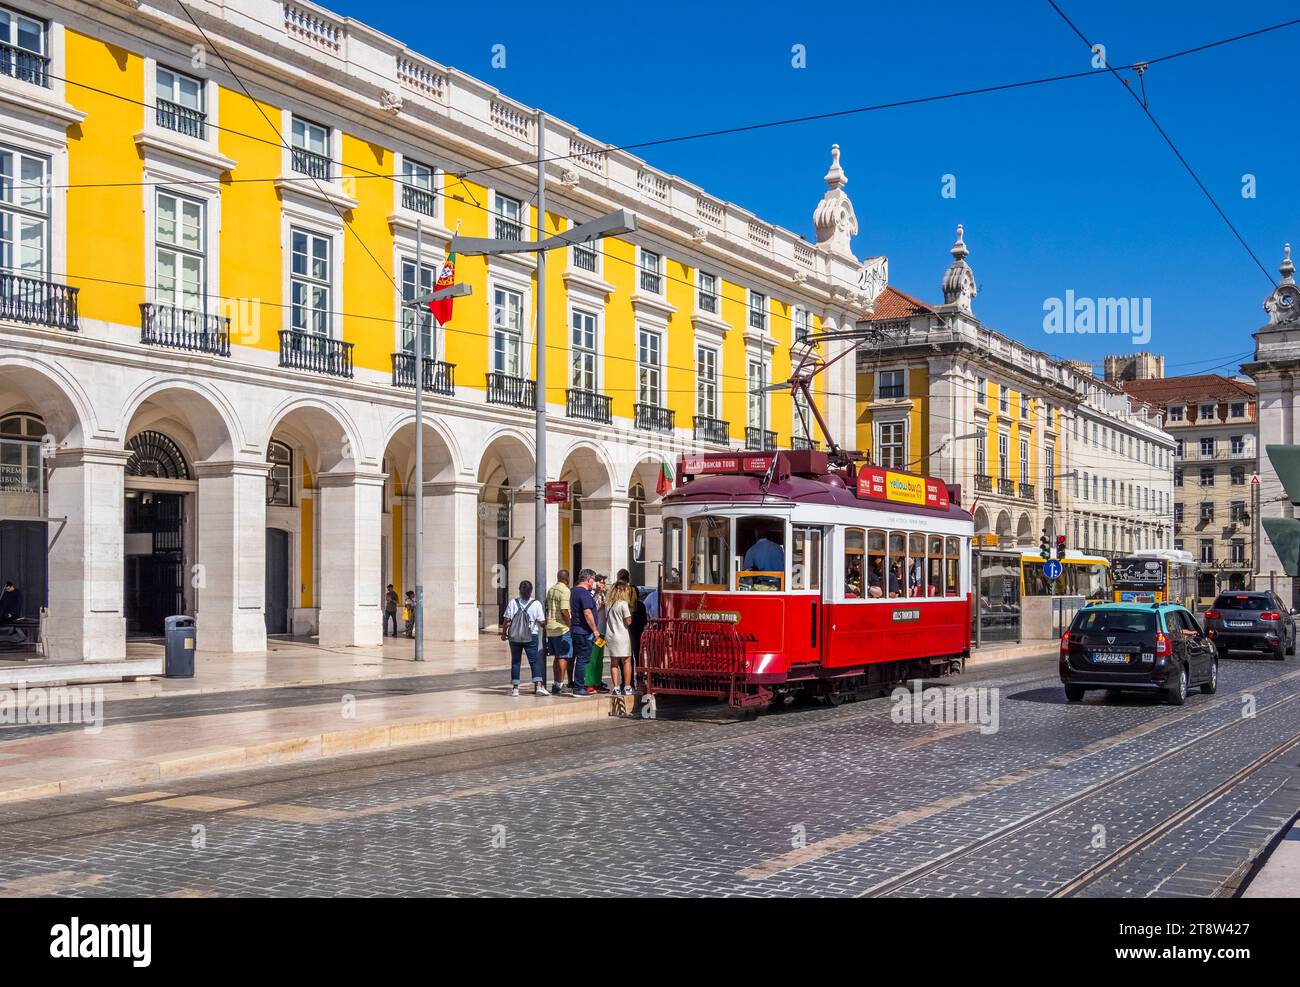 Tram o tram di Lisbona in Rue da Alfandega sulla Piazza del commercio o Piazza del Comércio nella sezione Baixa di Lisbona Portogallo Foto Stock